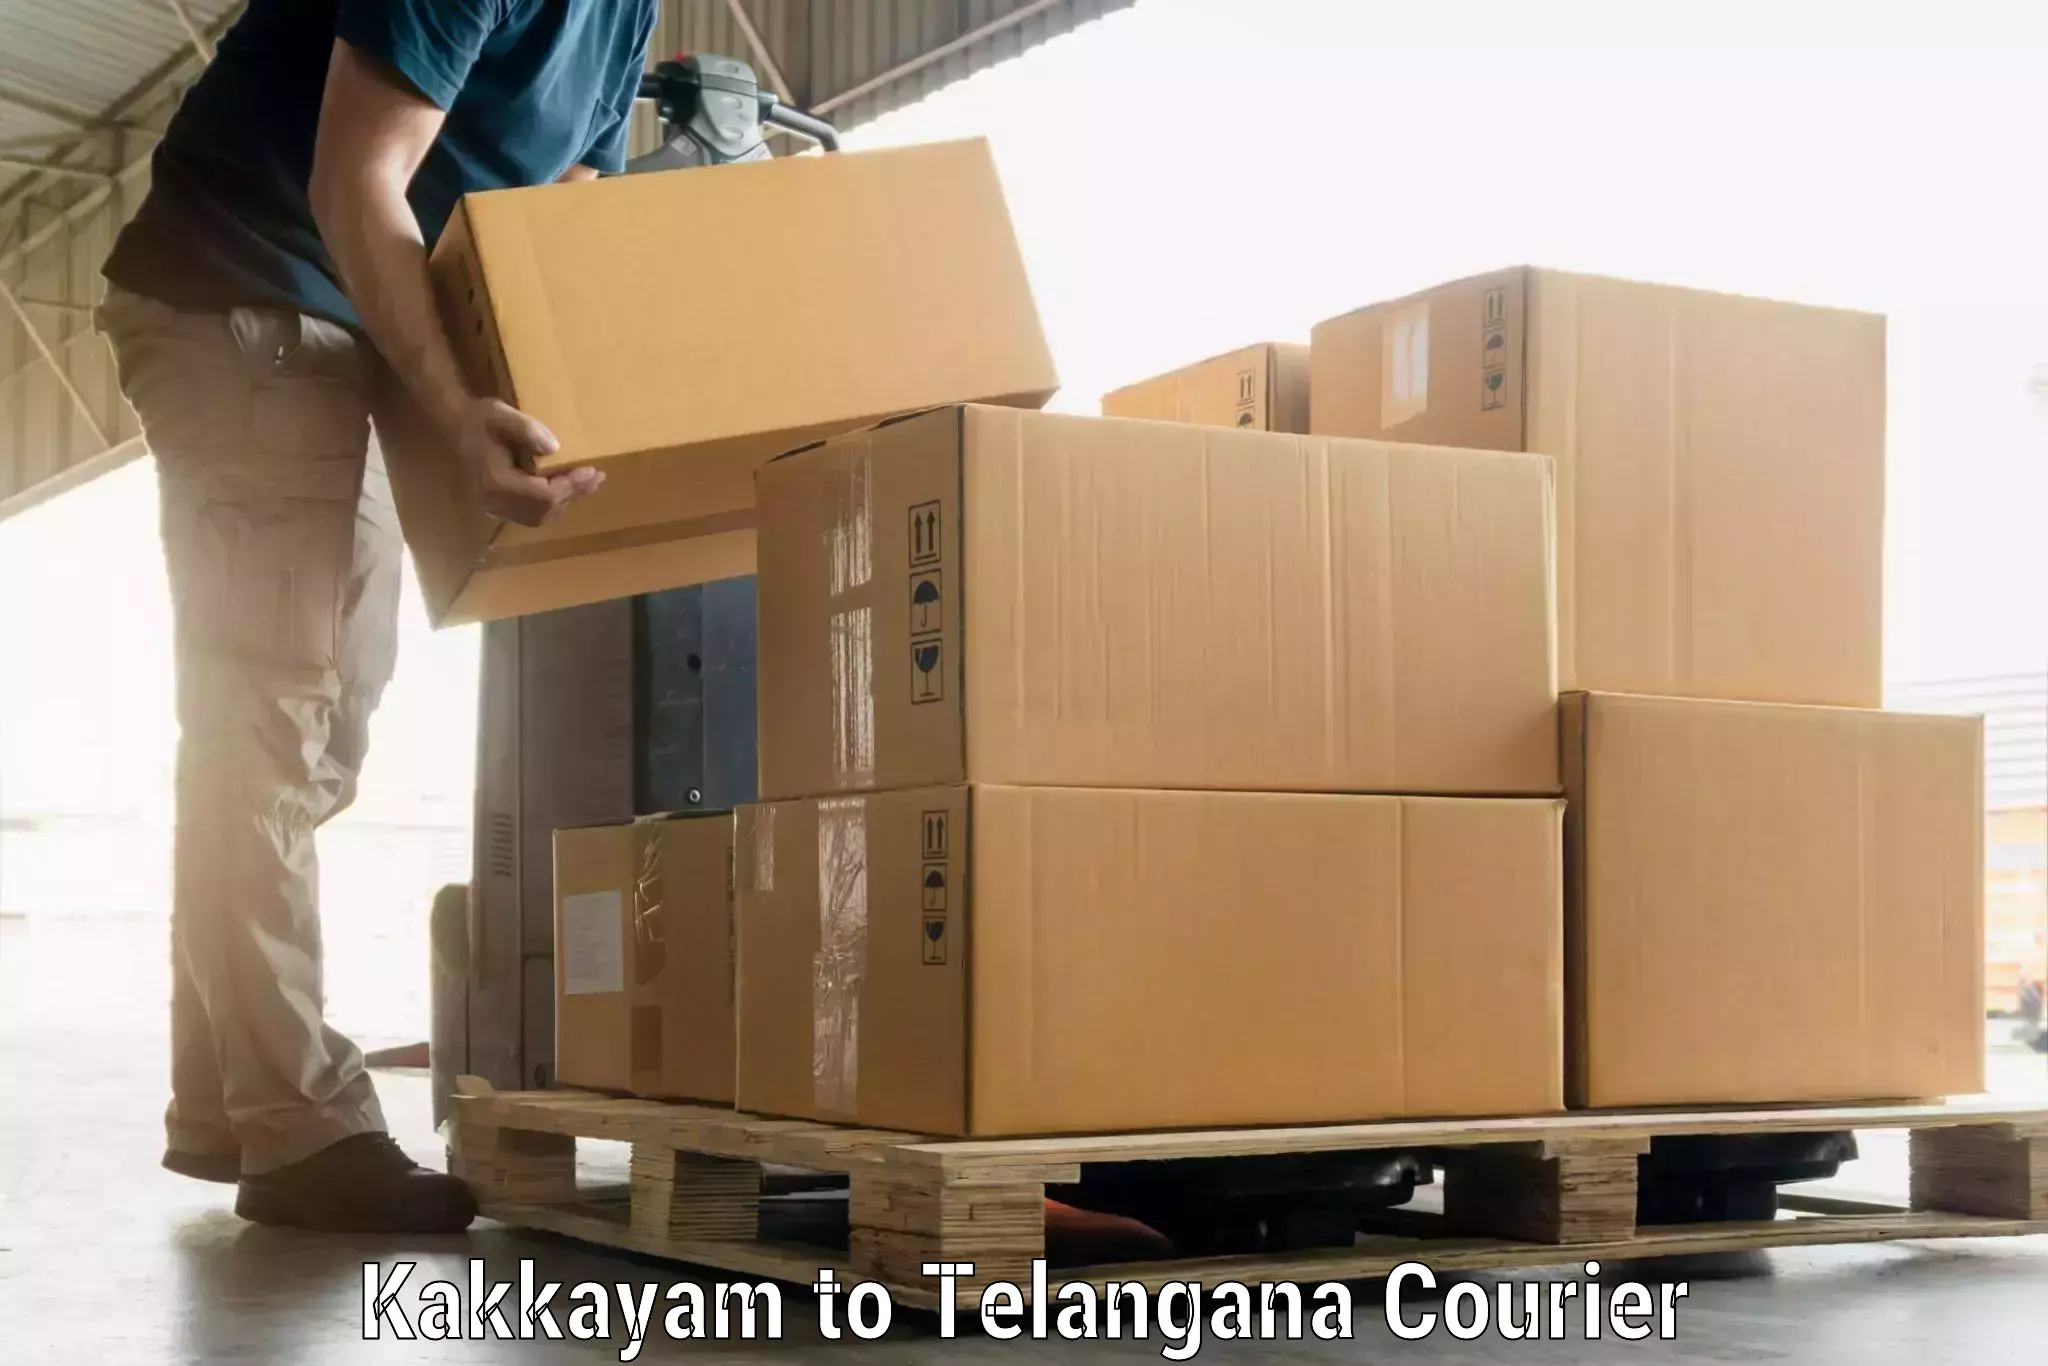 Luggage transport schedule Kakkayam to Yellandu